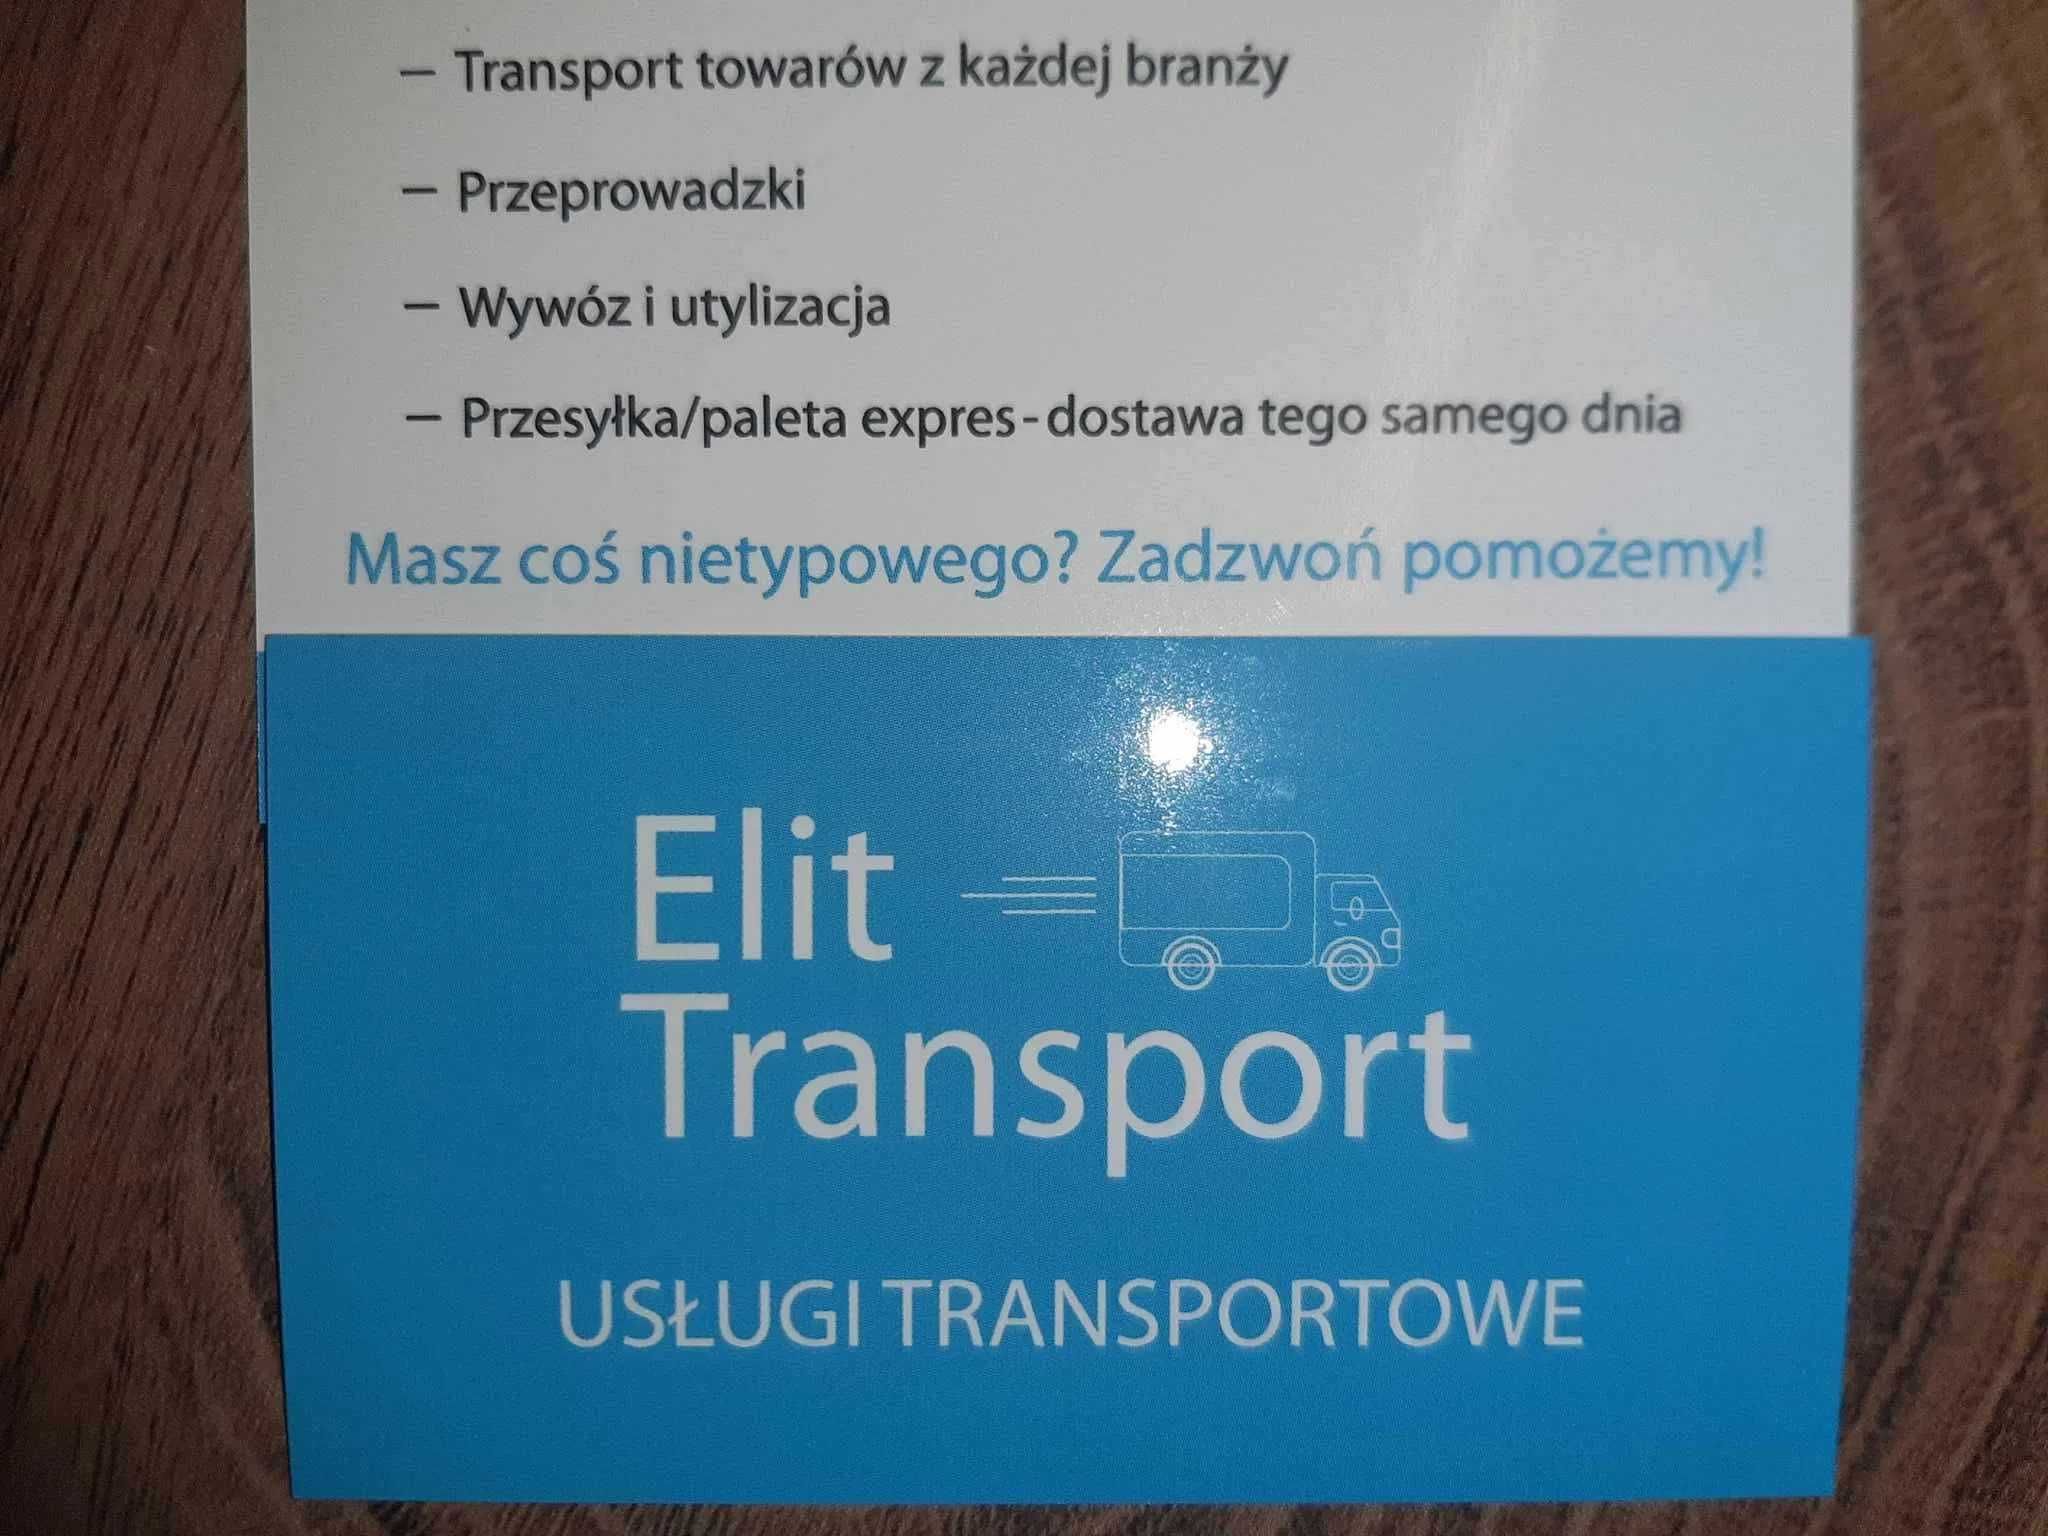 Transport /  SKLEPY / Przeprowadzki /  UTYLIZACJA  /   Paleta express